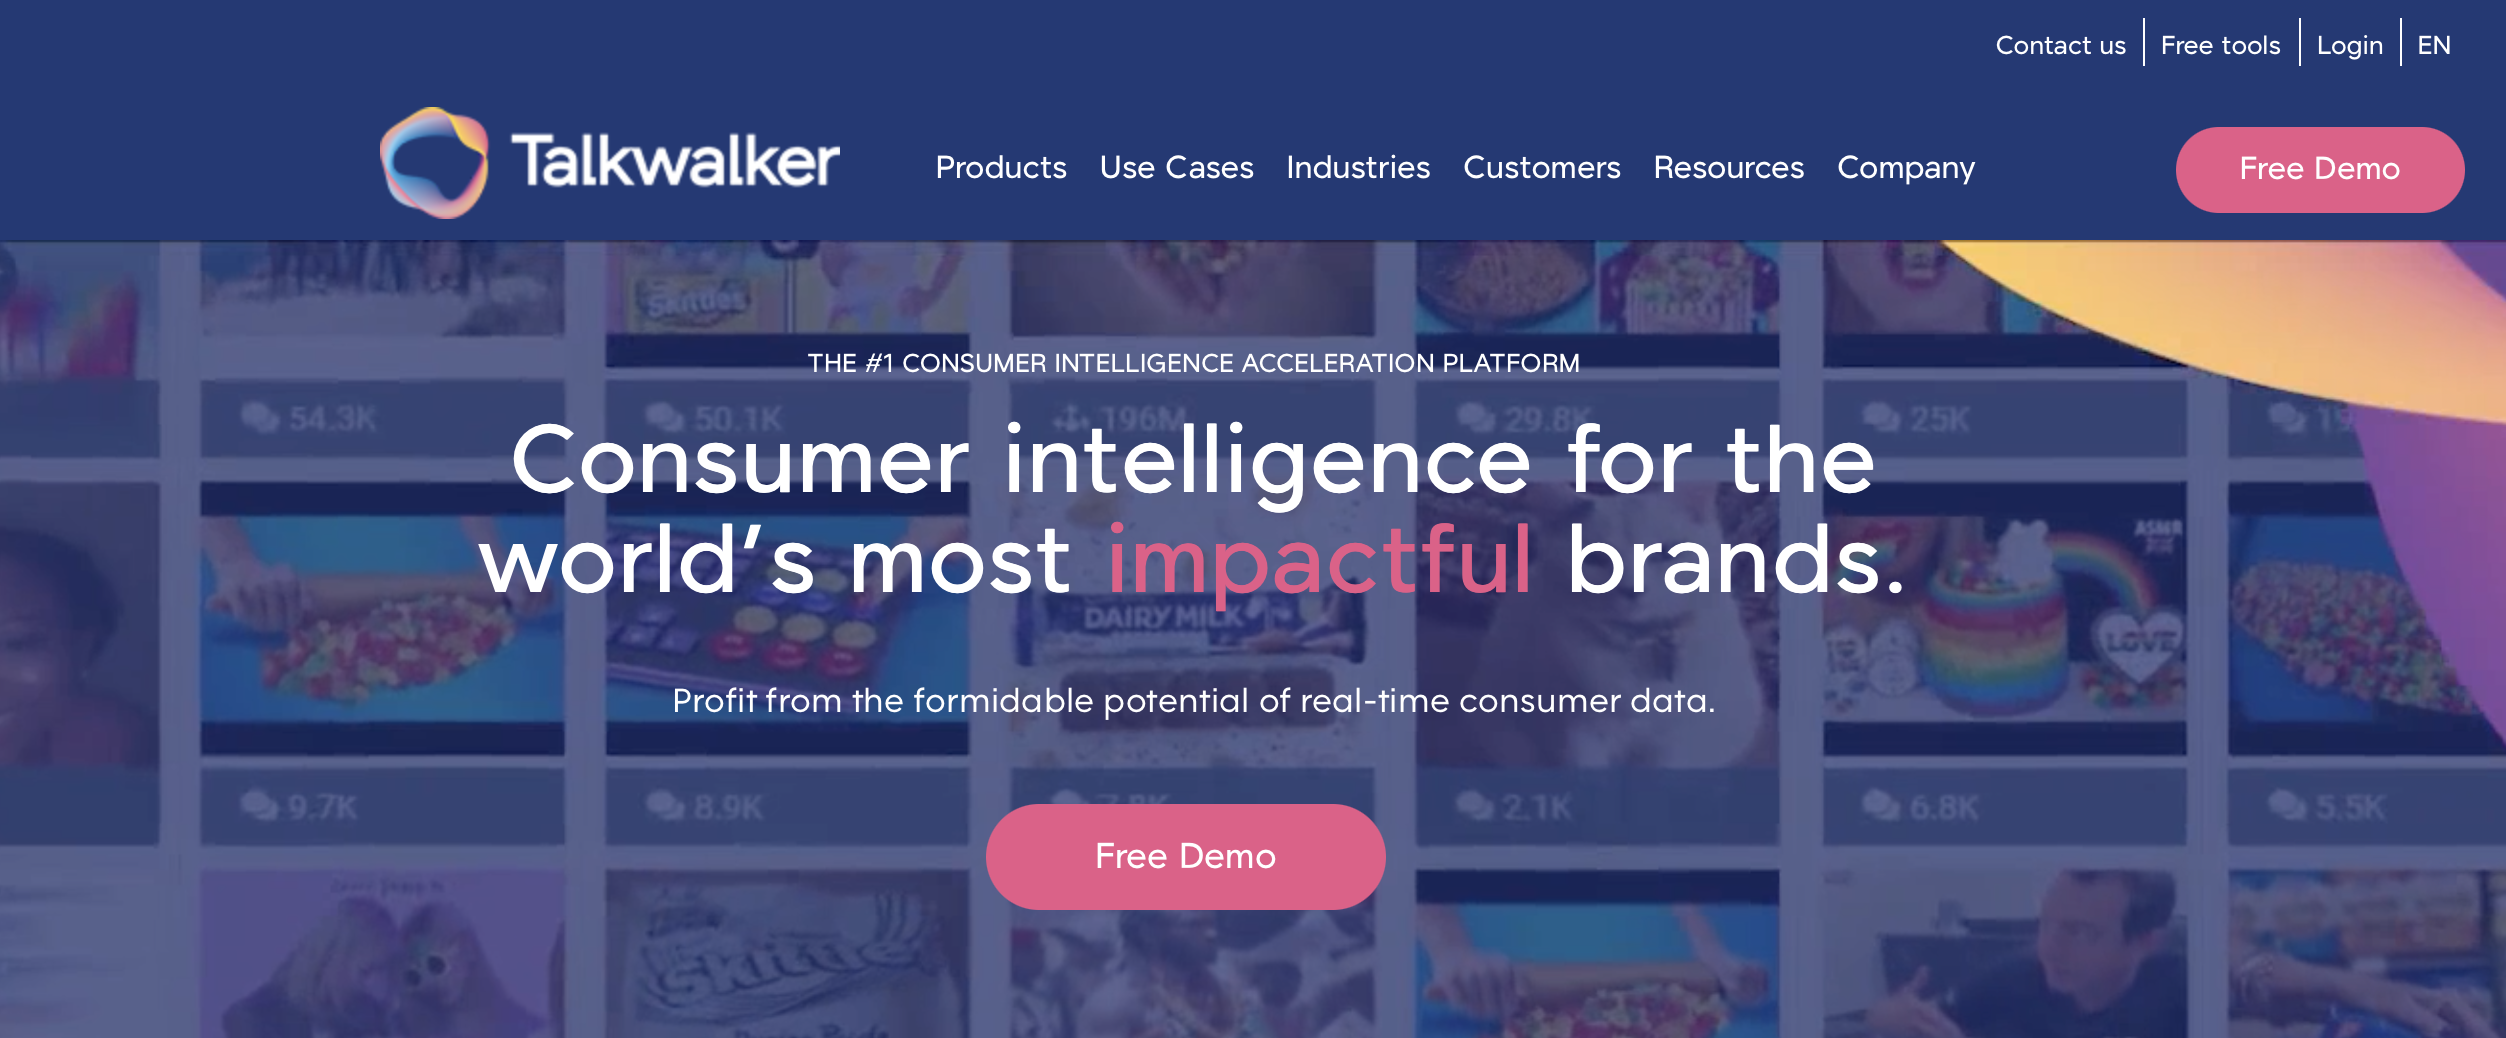 Talkwalker brand monitoring